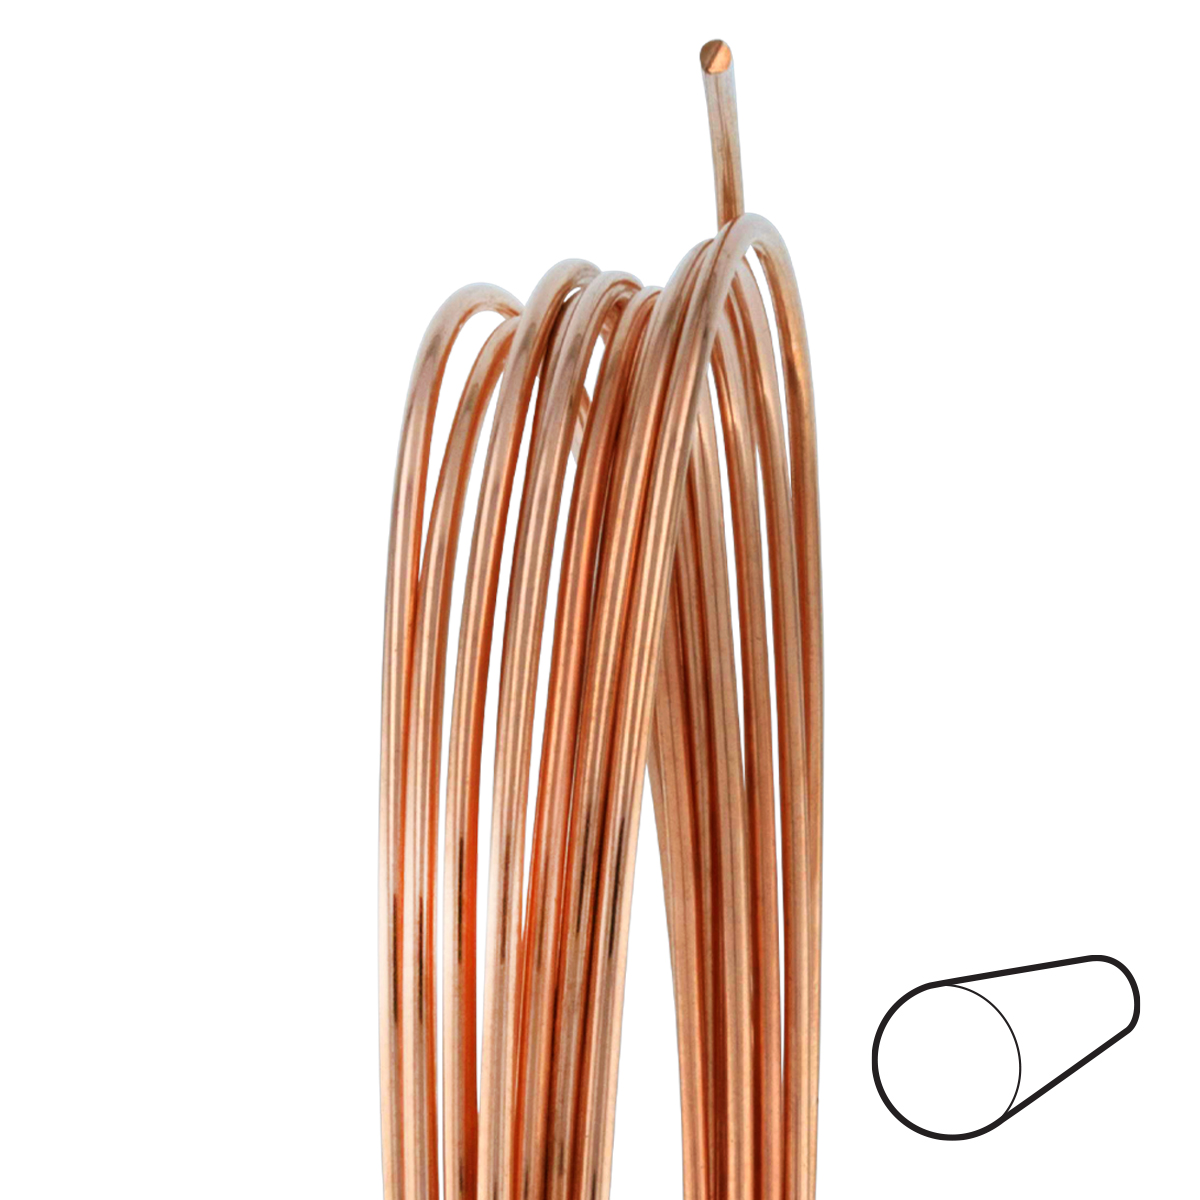 18 Gauge Round Half Hard Copper Wire: Wire Jewelry, Wire Wrap Tutorials